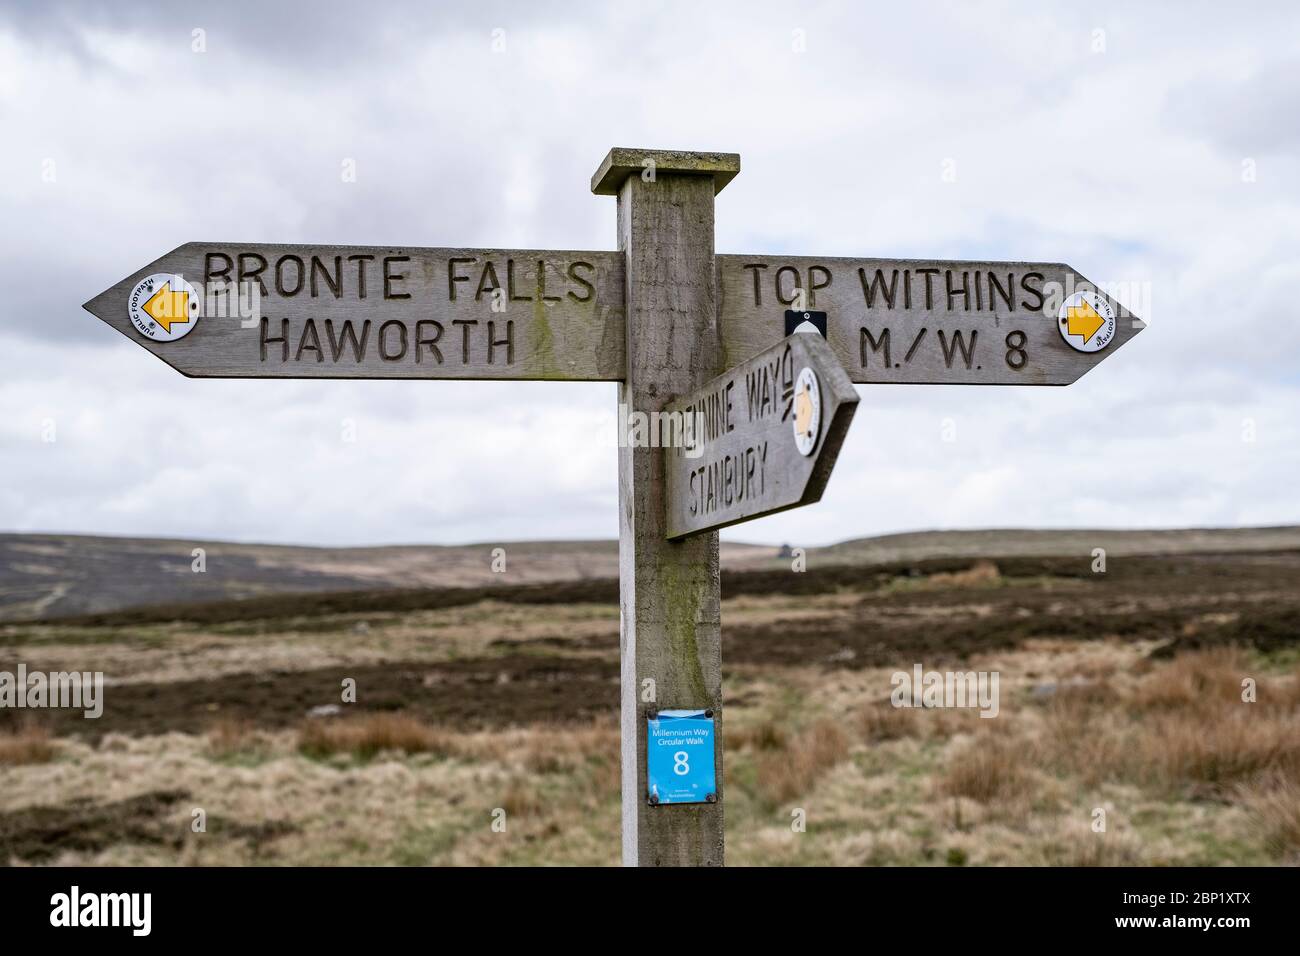 Top Withens auch als Top Withins auf Haworth Moor, Haworth, Großbritannien. sagte die Inspiration für das Buch Wuthering Heights von Emily Bronte bekannt. Stockfoto